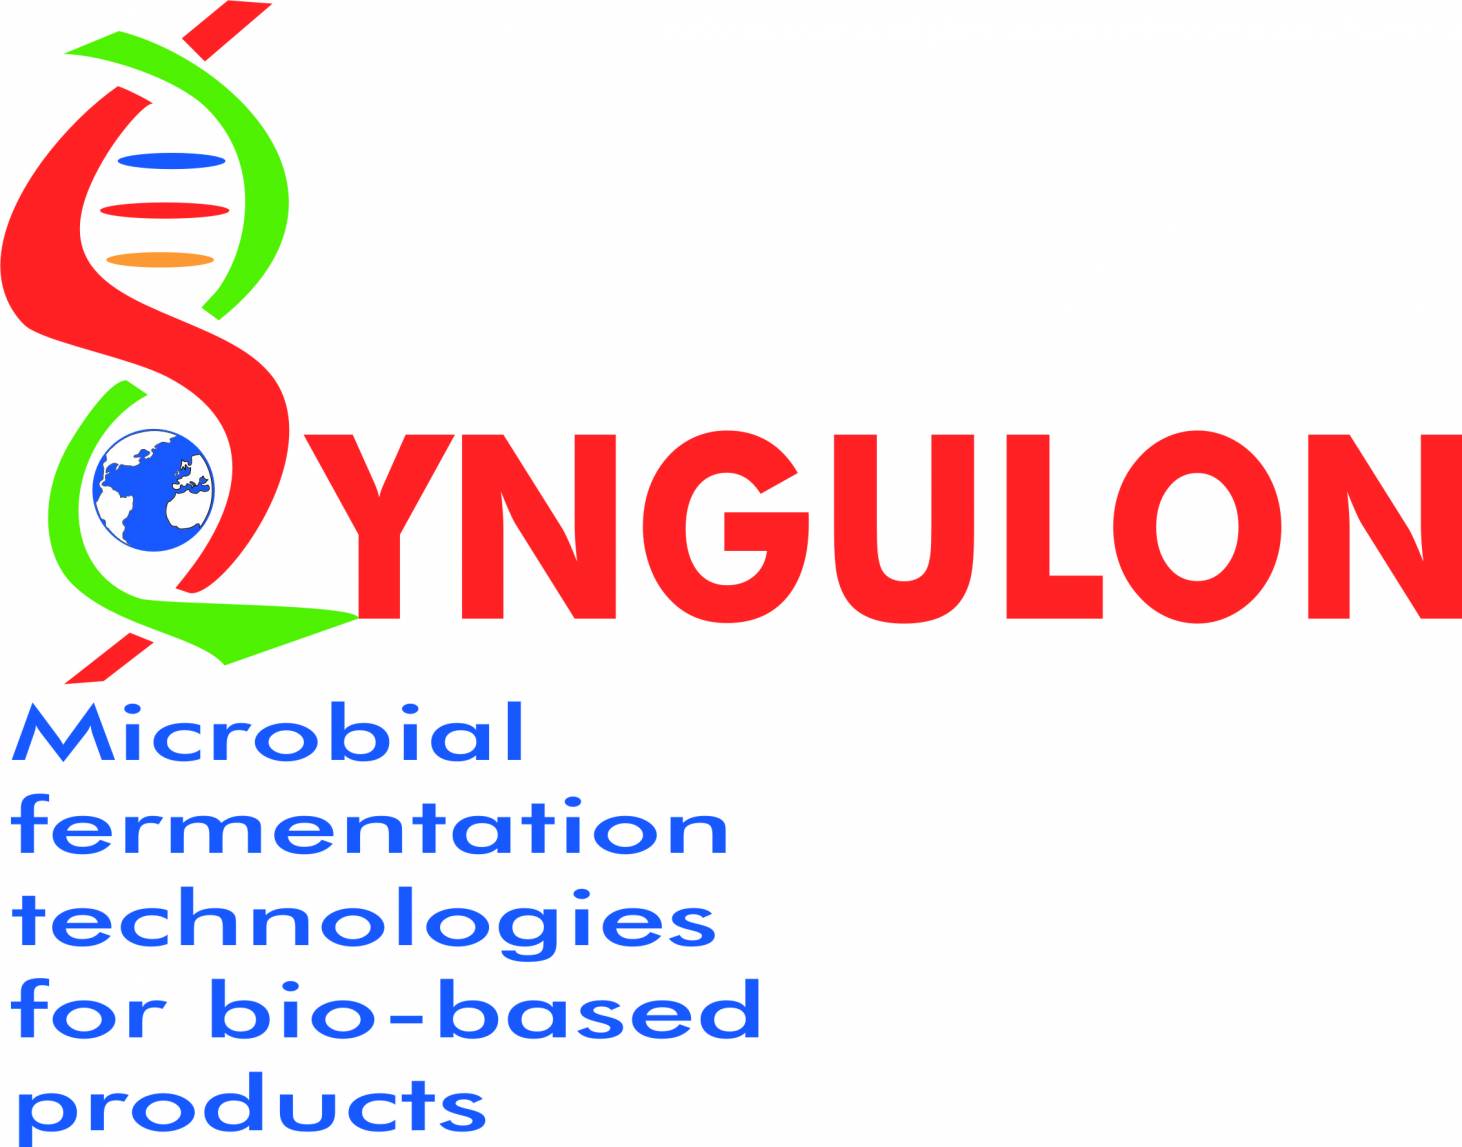 syngulon Logo